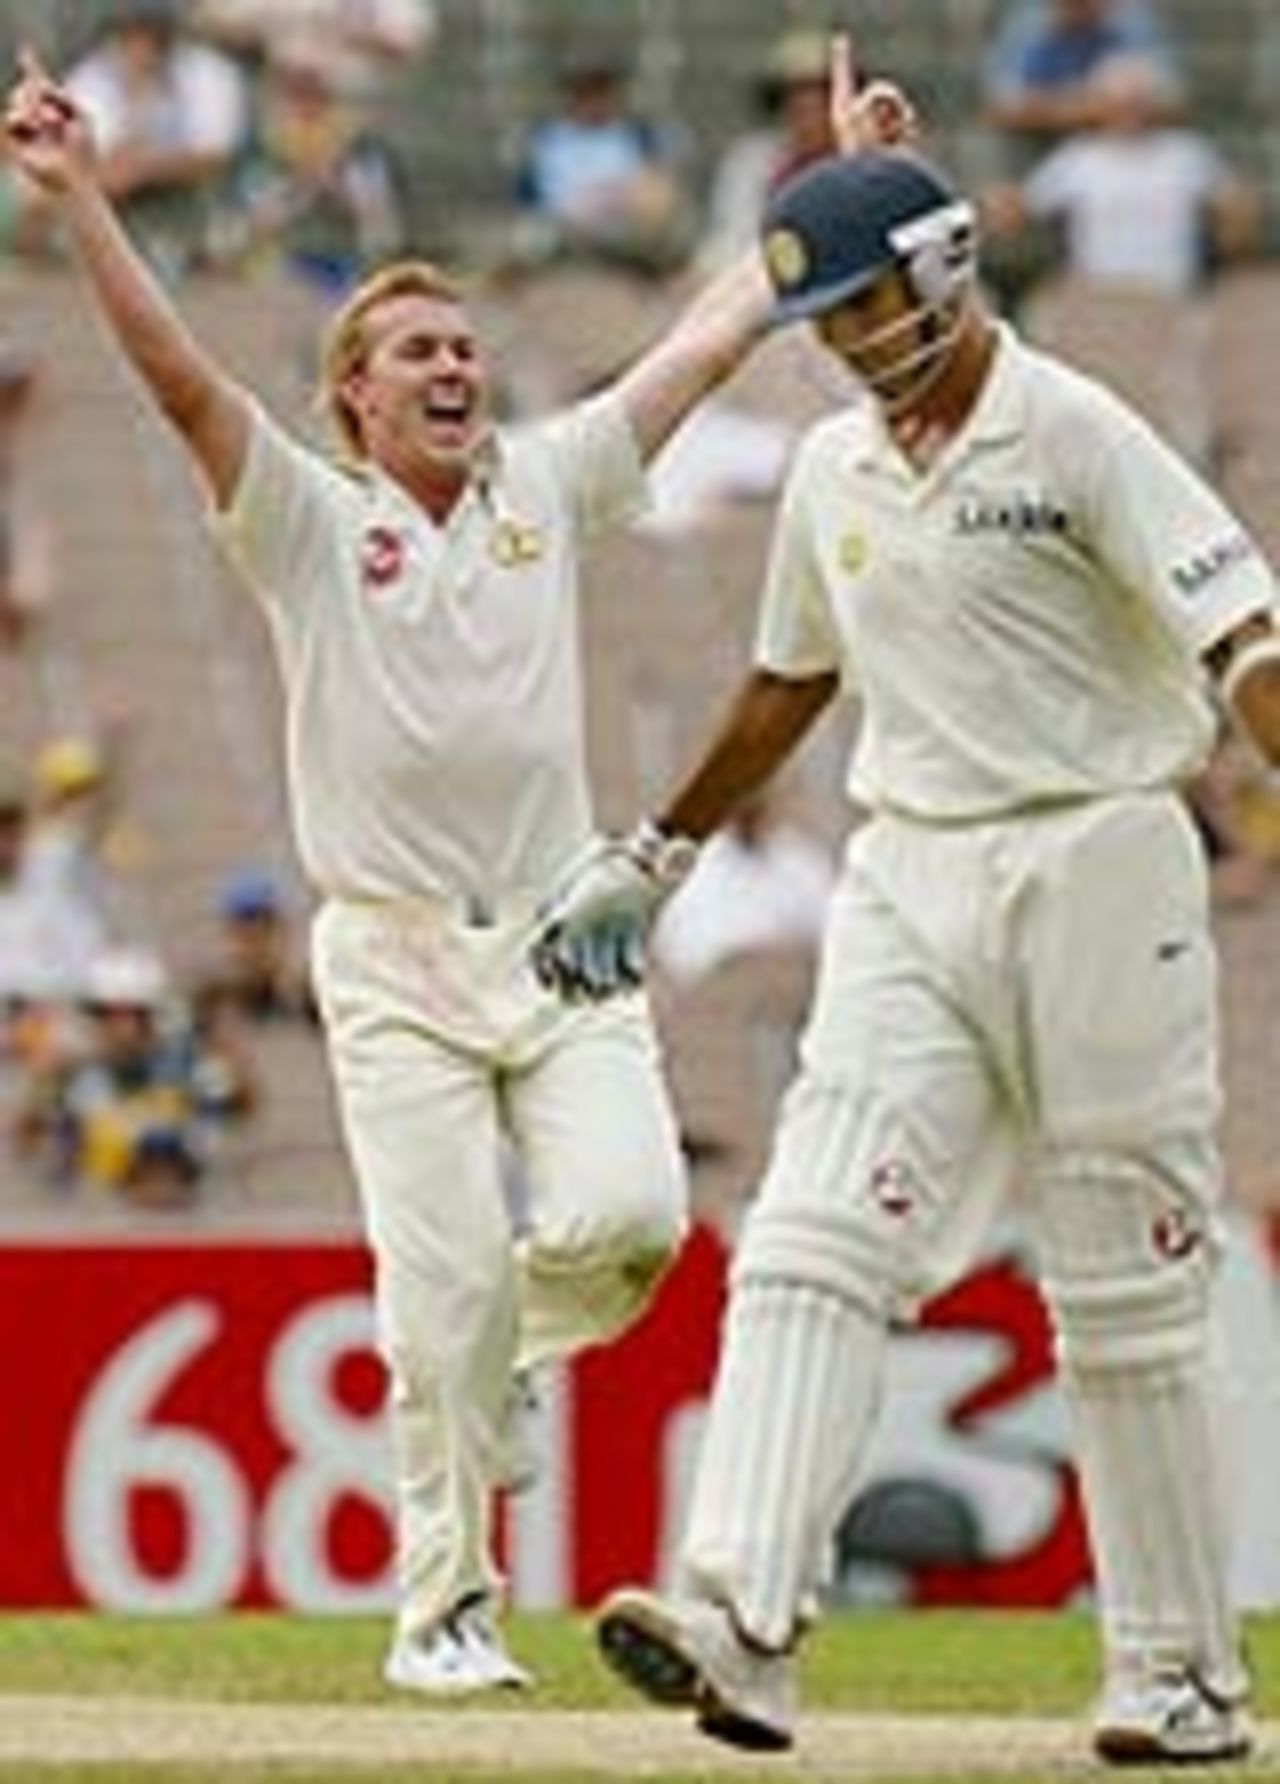 Brett Lee dismisses Rahul Dravid for 92, Australia v India, 3rd Test, Melbourne, 4th day, December 29, 2003